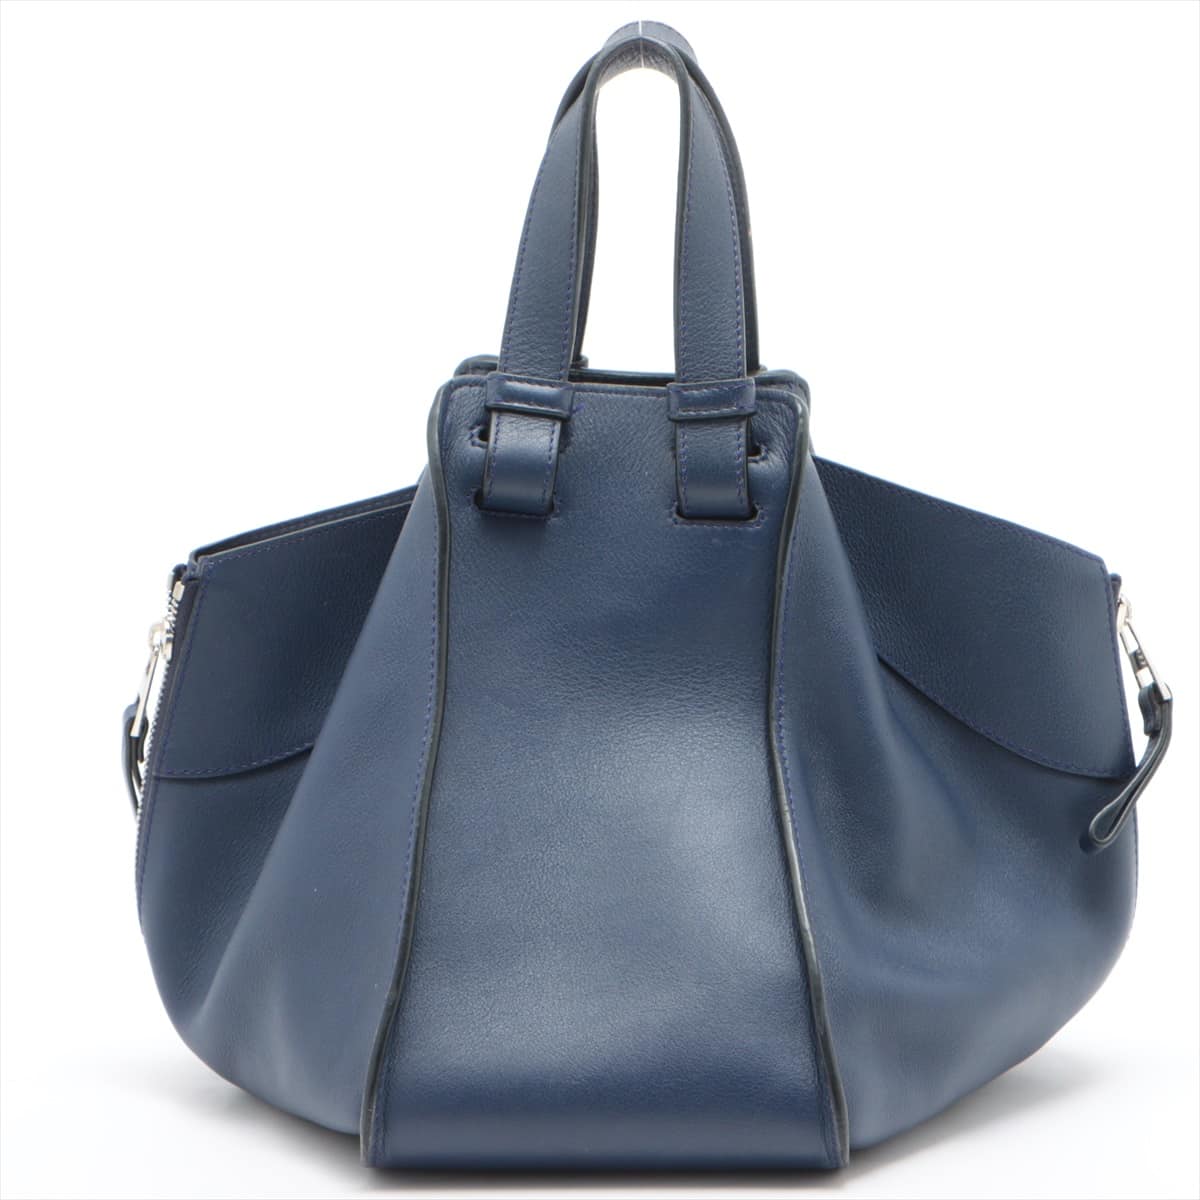 Loewe Hammock small Leather 2way handbag Navy blue